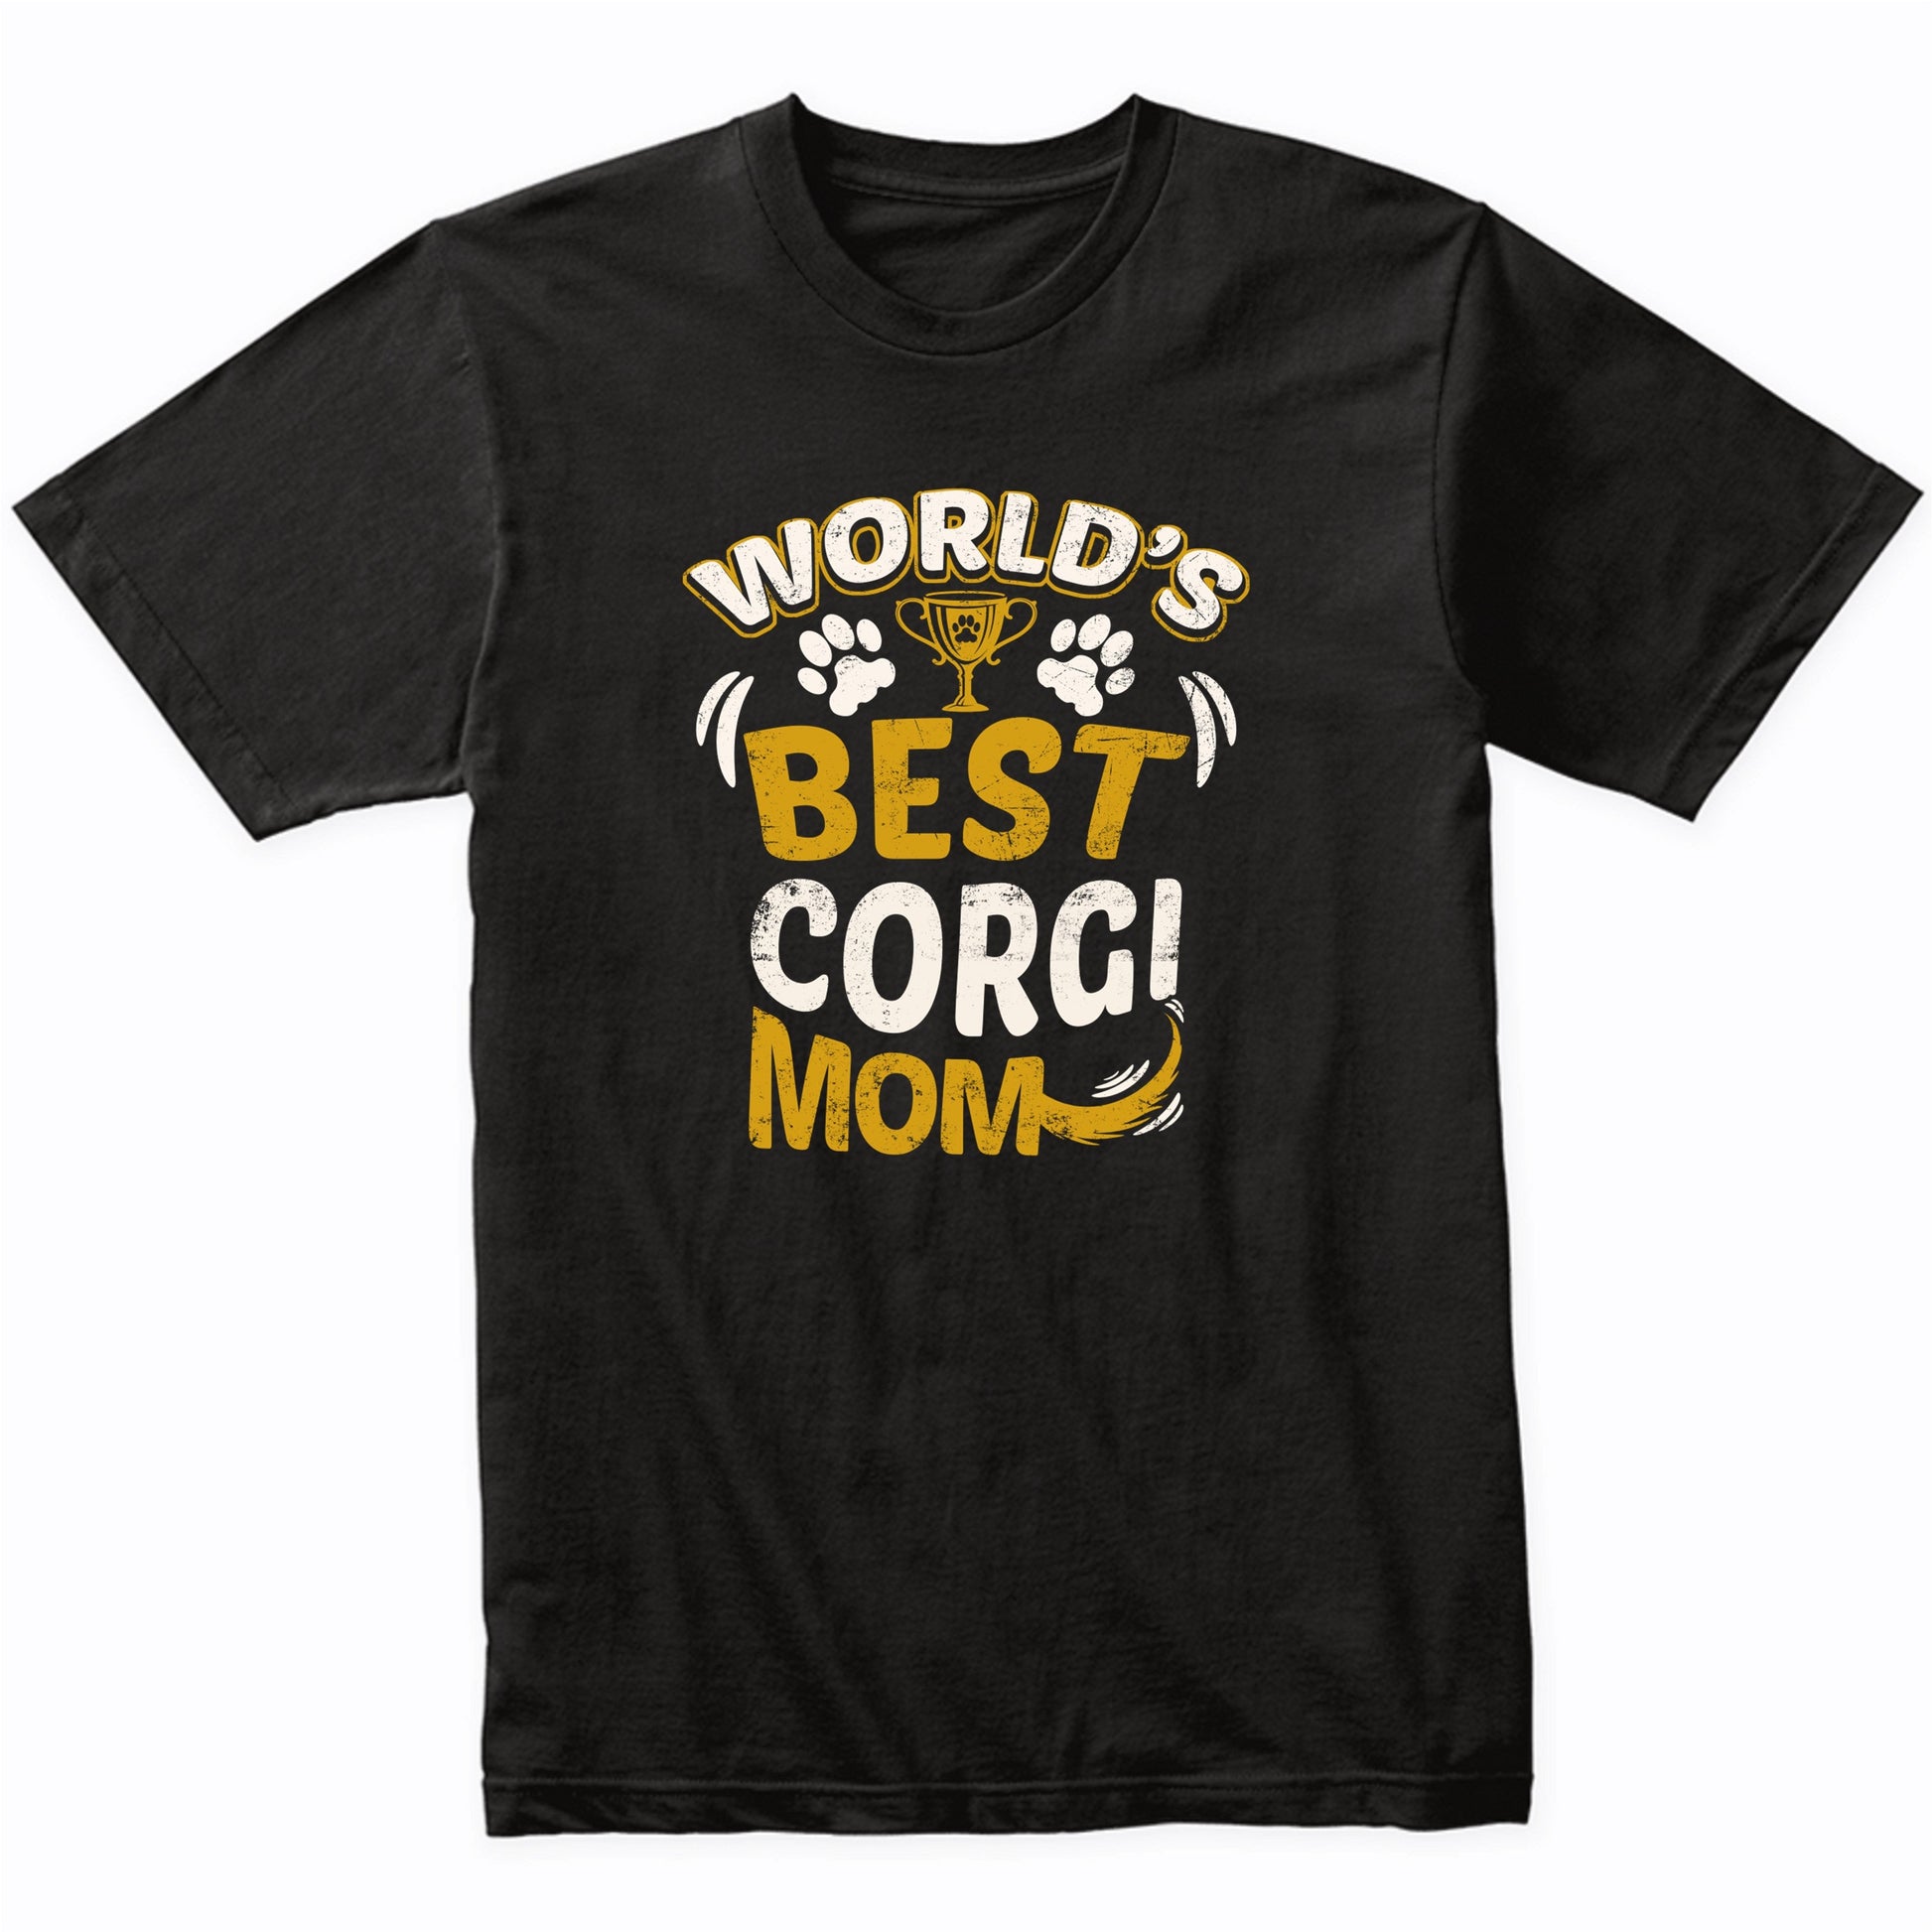 World's Best Corgi Mom Graphic T-Shirt